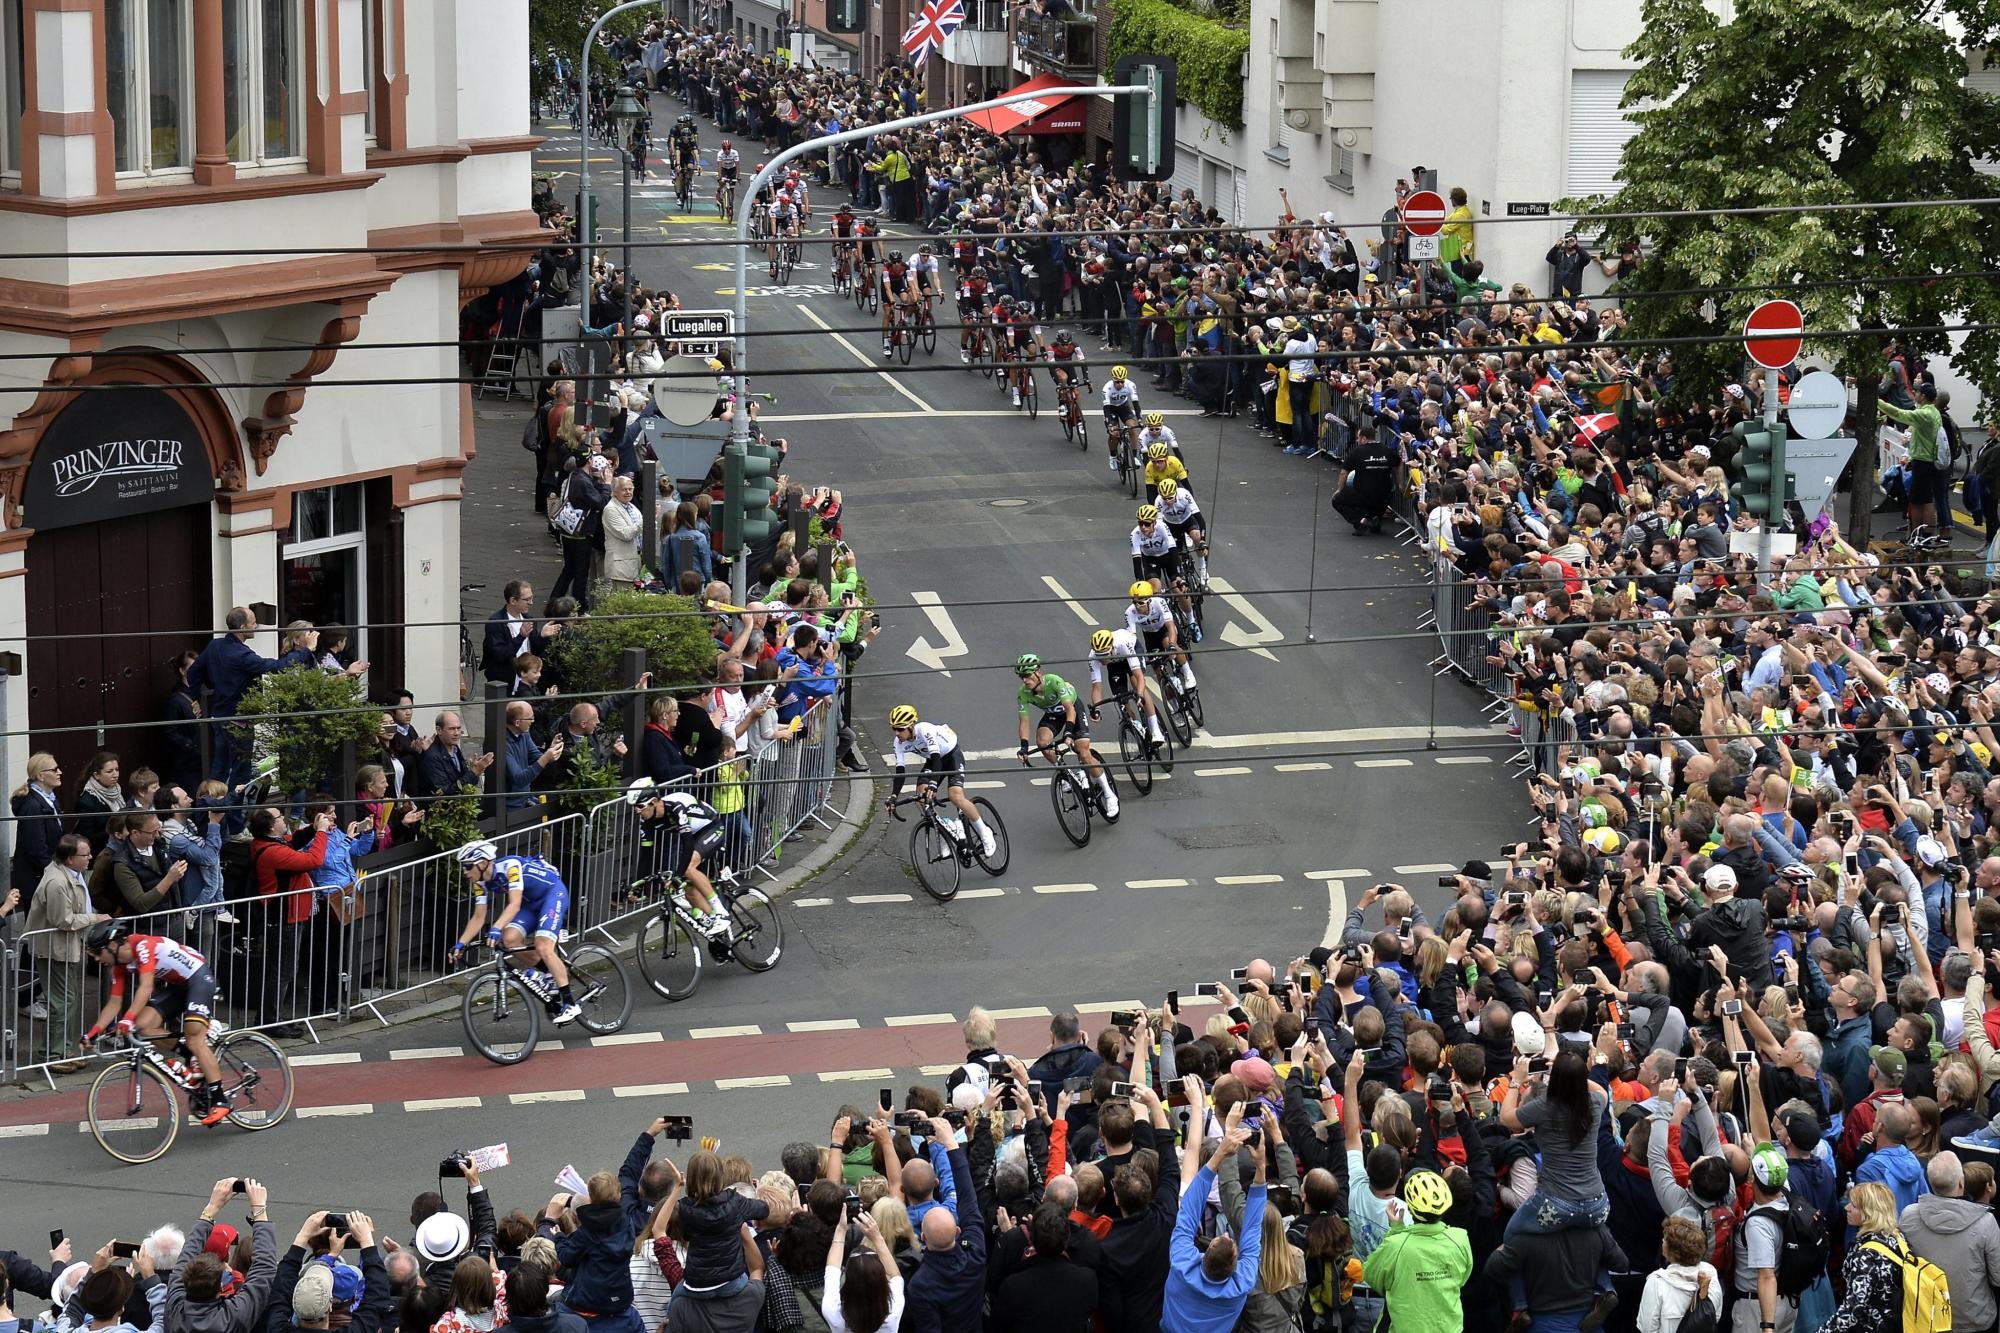 El grupo de corredores pasa el Luegallee en Duesseldorf durante la 2ª etapa de la 104ª edición de la carrera de ciclismo del Tour de Francia en 203,5km en Duesseldorf, Alemania, el 02 de julio de 2017.